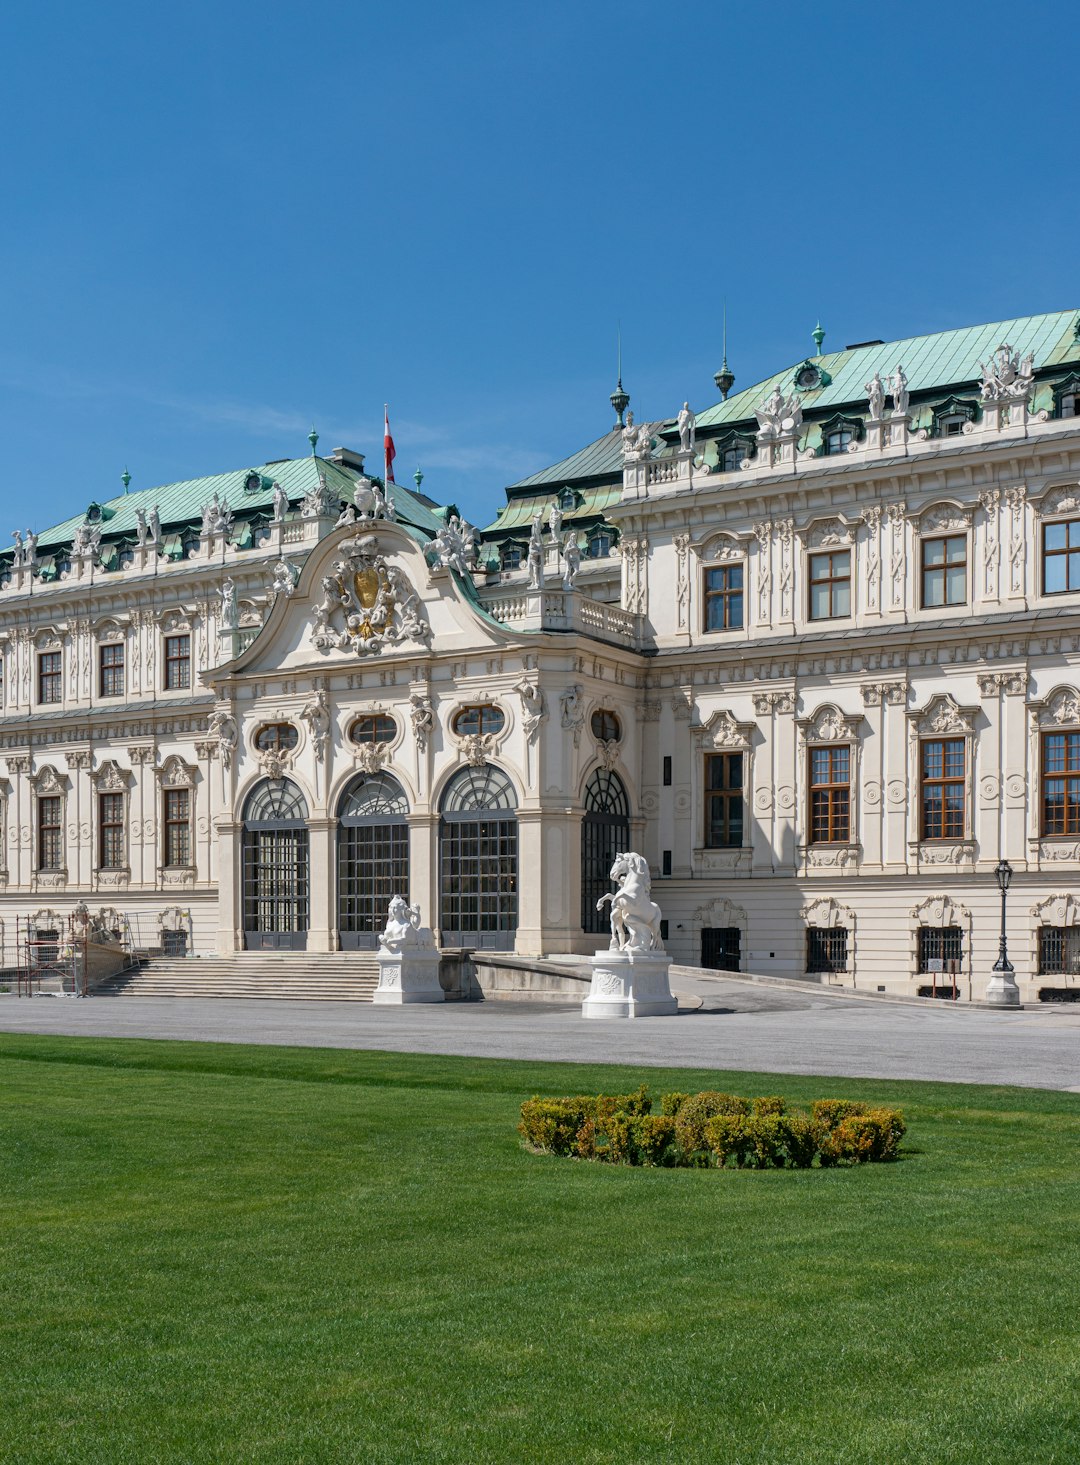 Landmark photo spot Am Belvedere Burgtheater